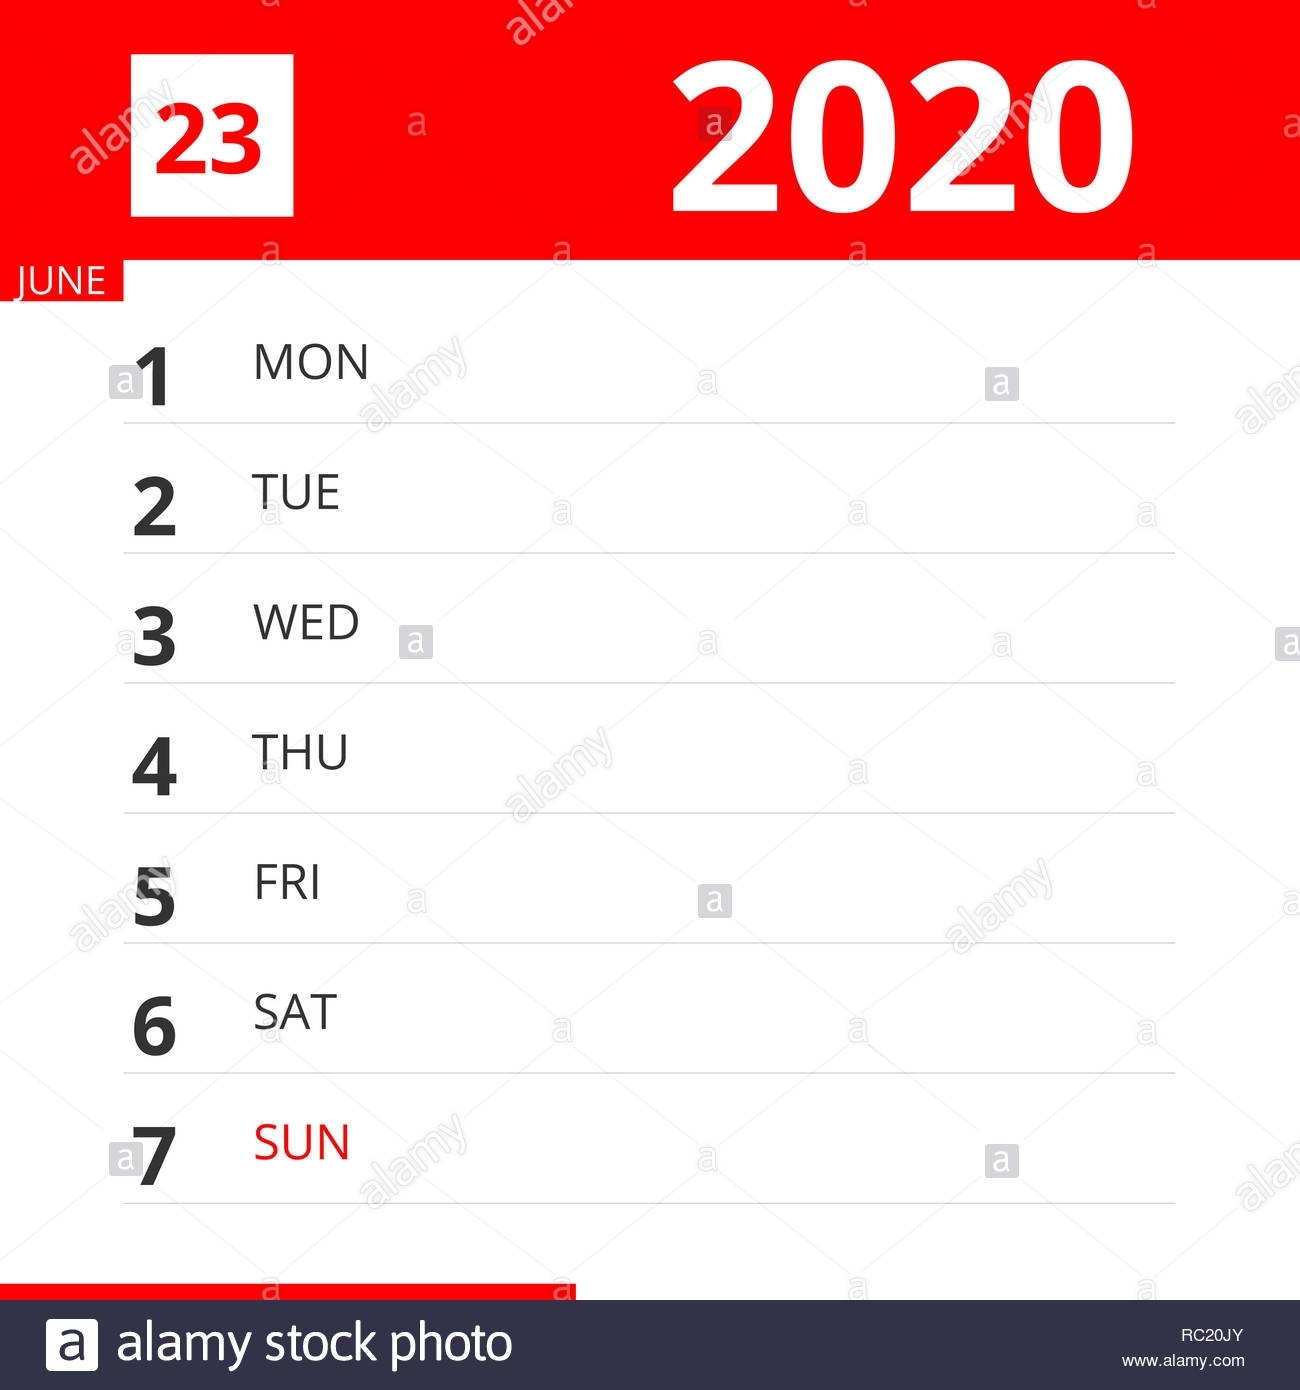 Calendar Planner For Week 23 In 2020, Ends June 7, 2020